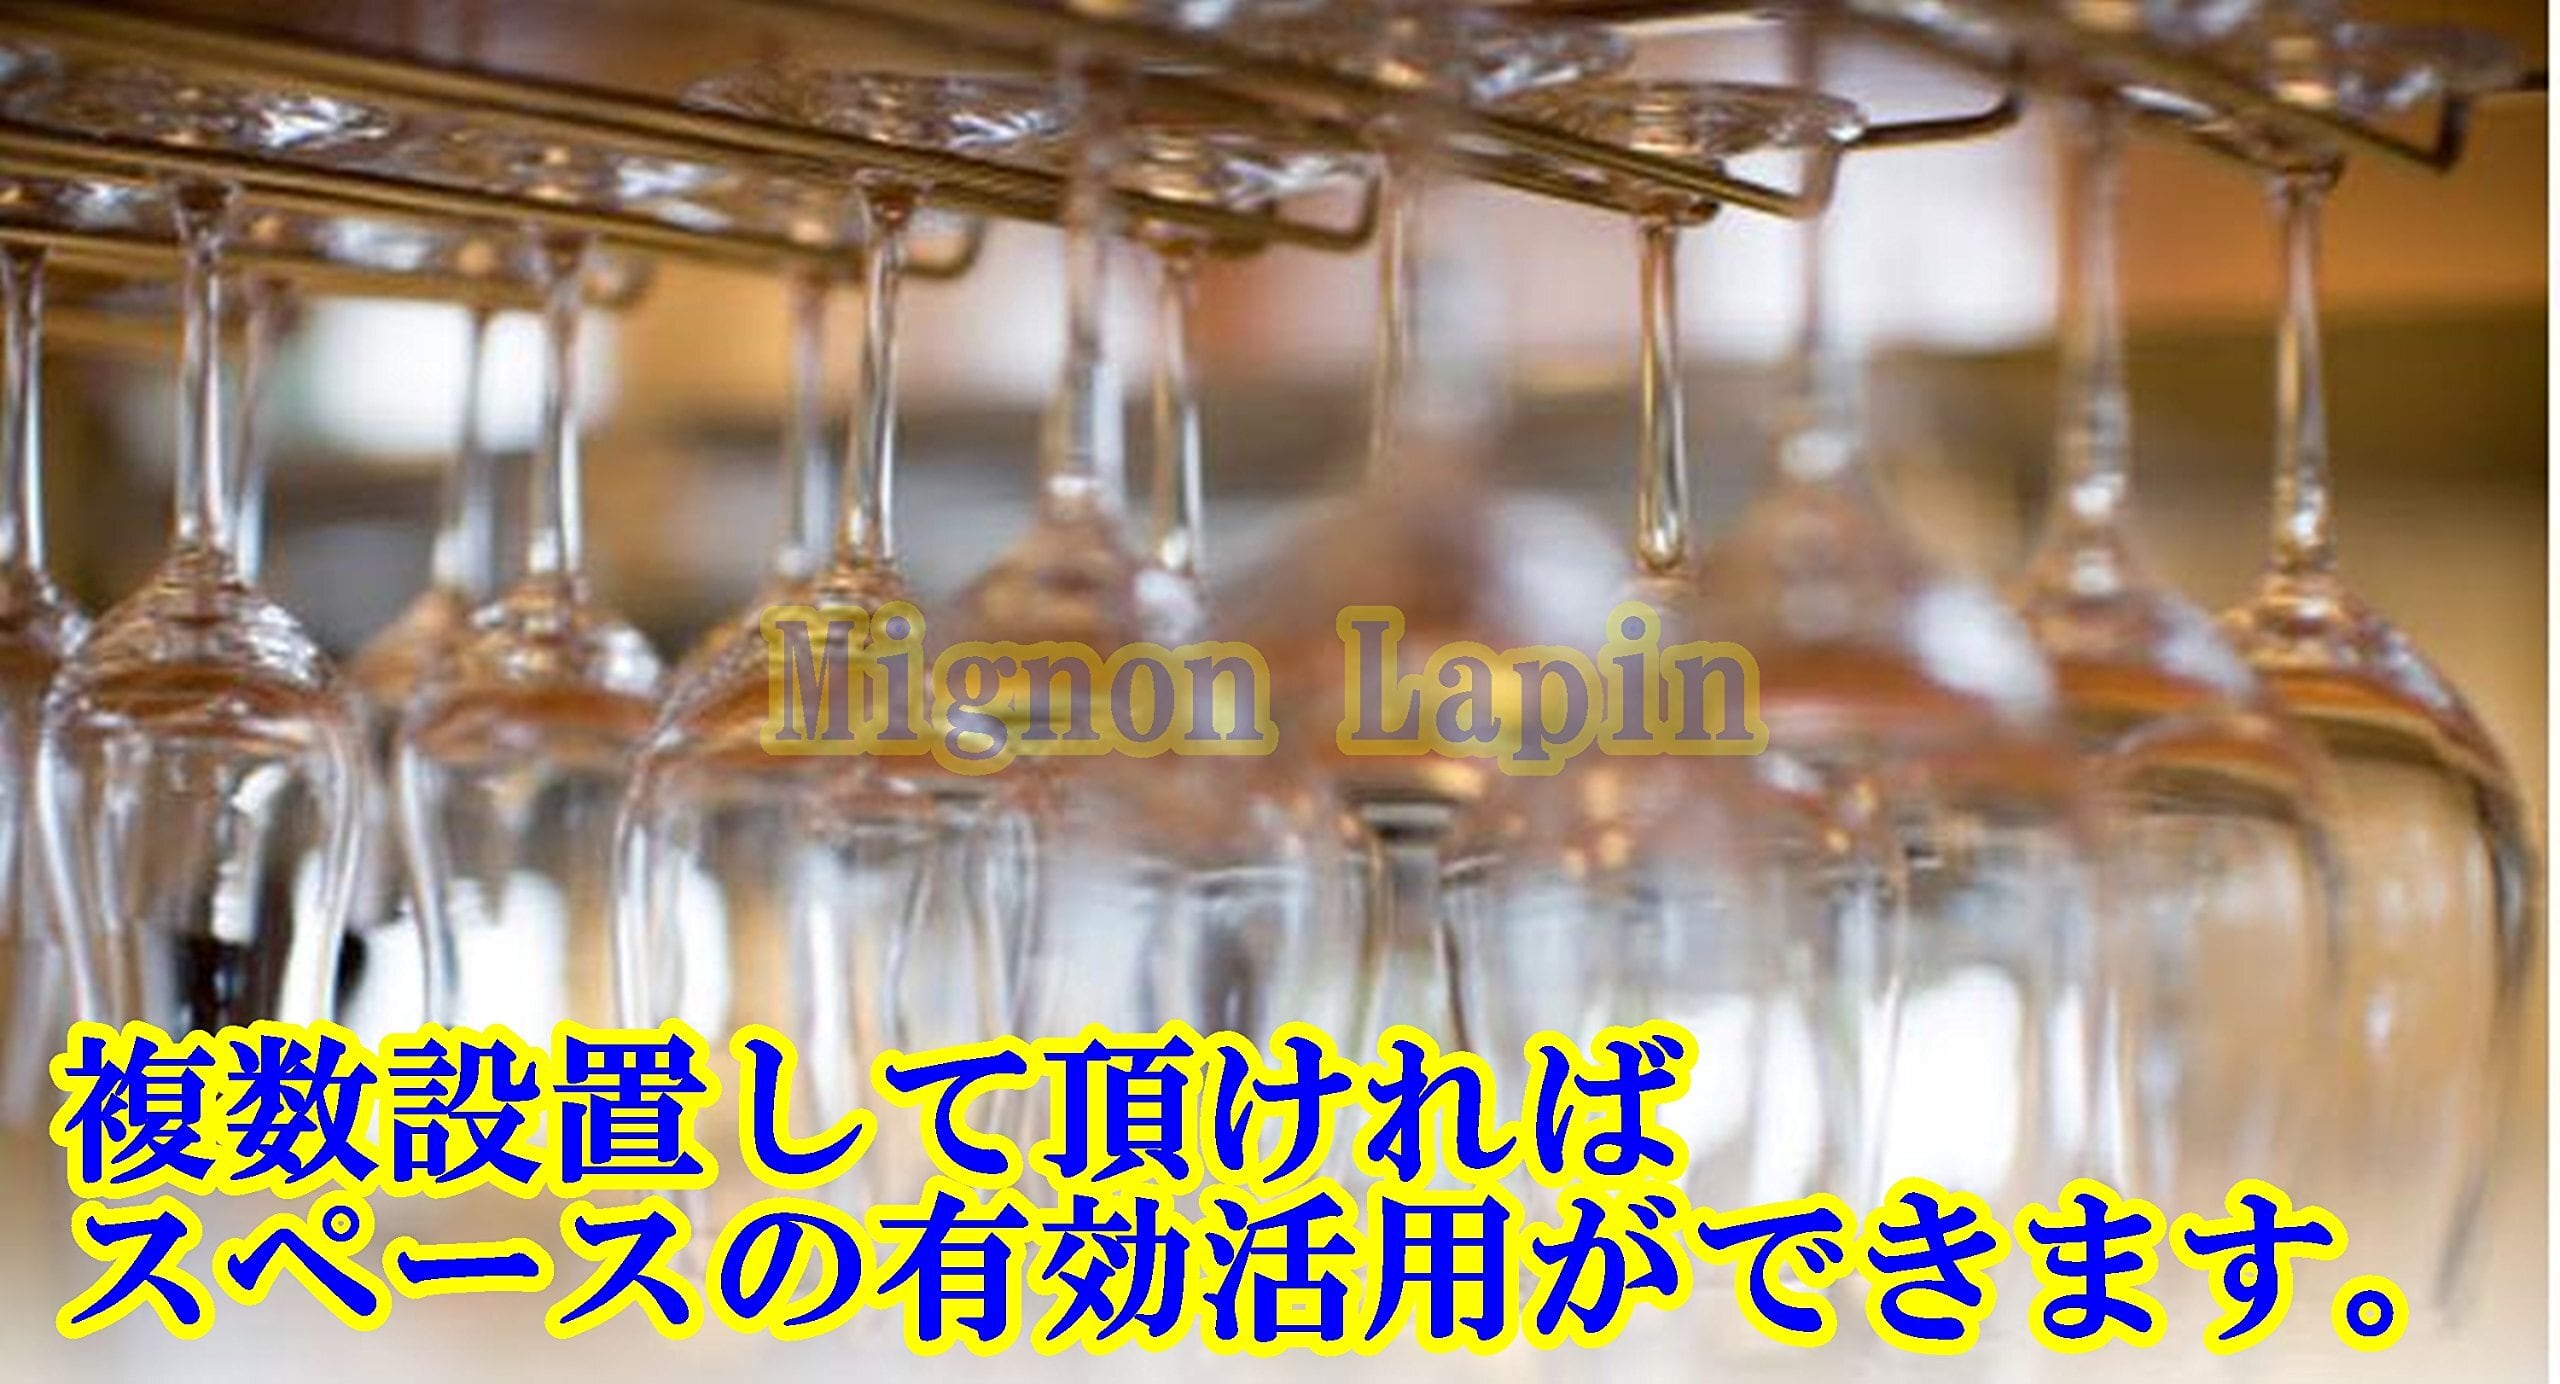 Mignon Lapin 真鍮色 選べるレーン ワイングラスホルダー シャンパングラス ハンガー ラック 吊り下げ 簡単取り付け ネジ付き